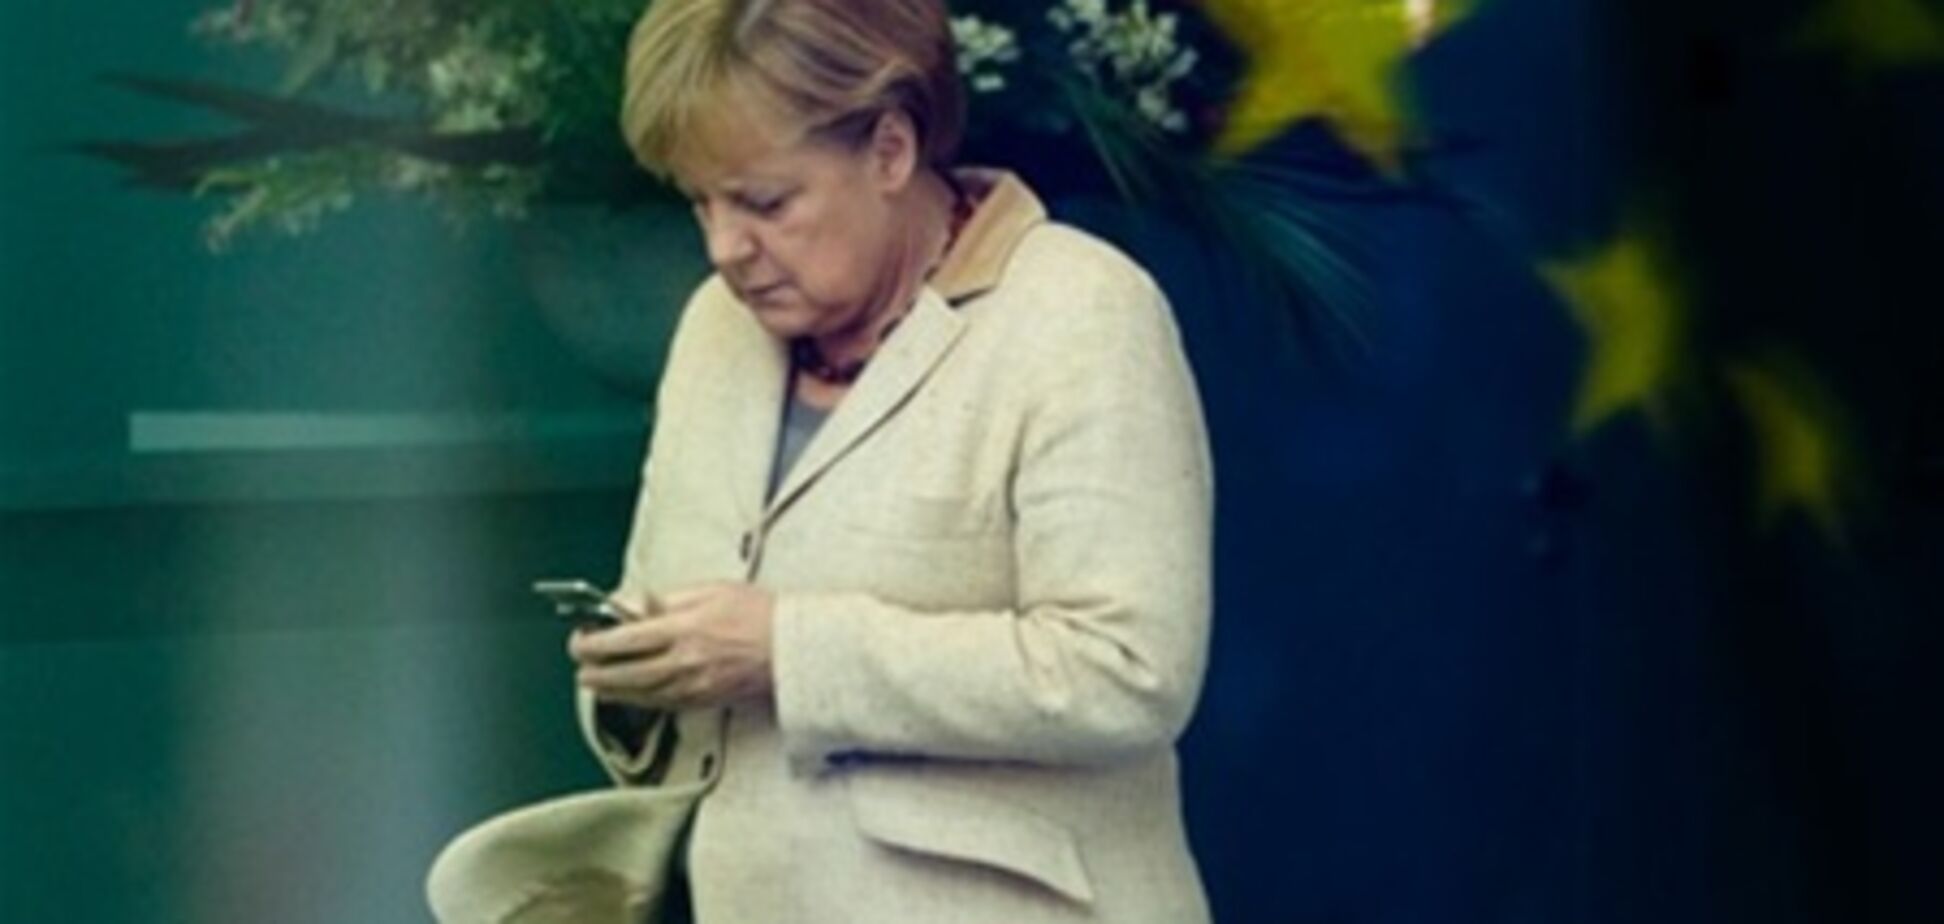 Руководство Германии снабдят смартфонами с засекречиванием данных